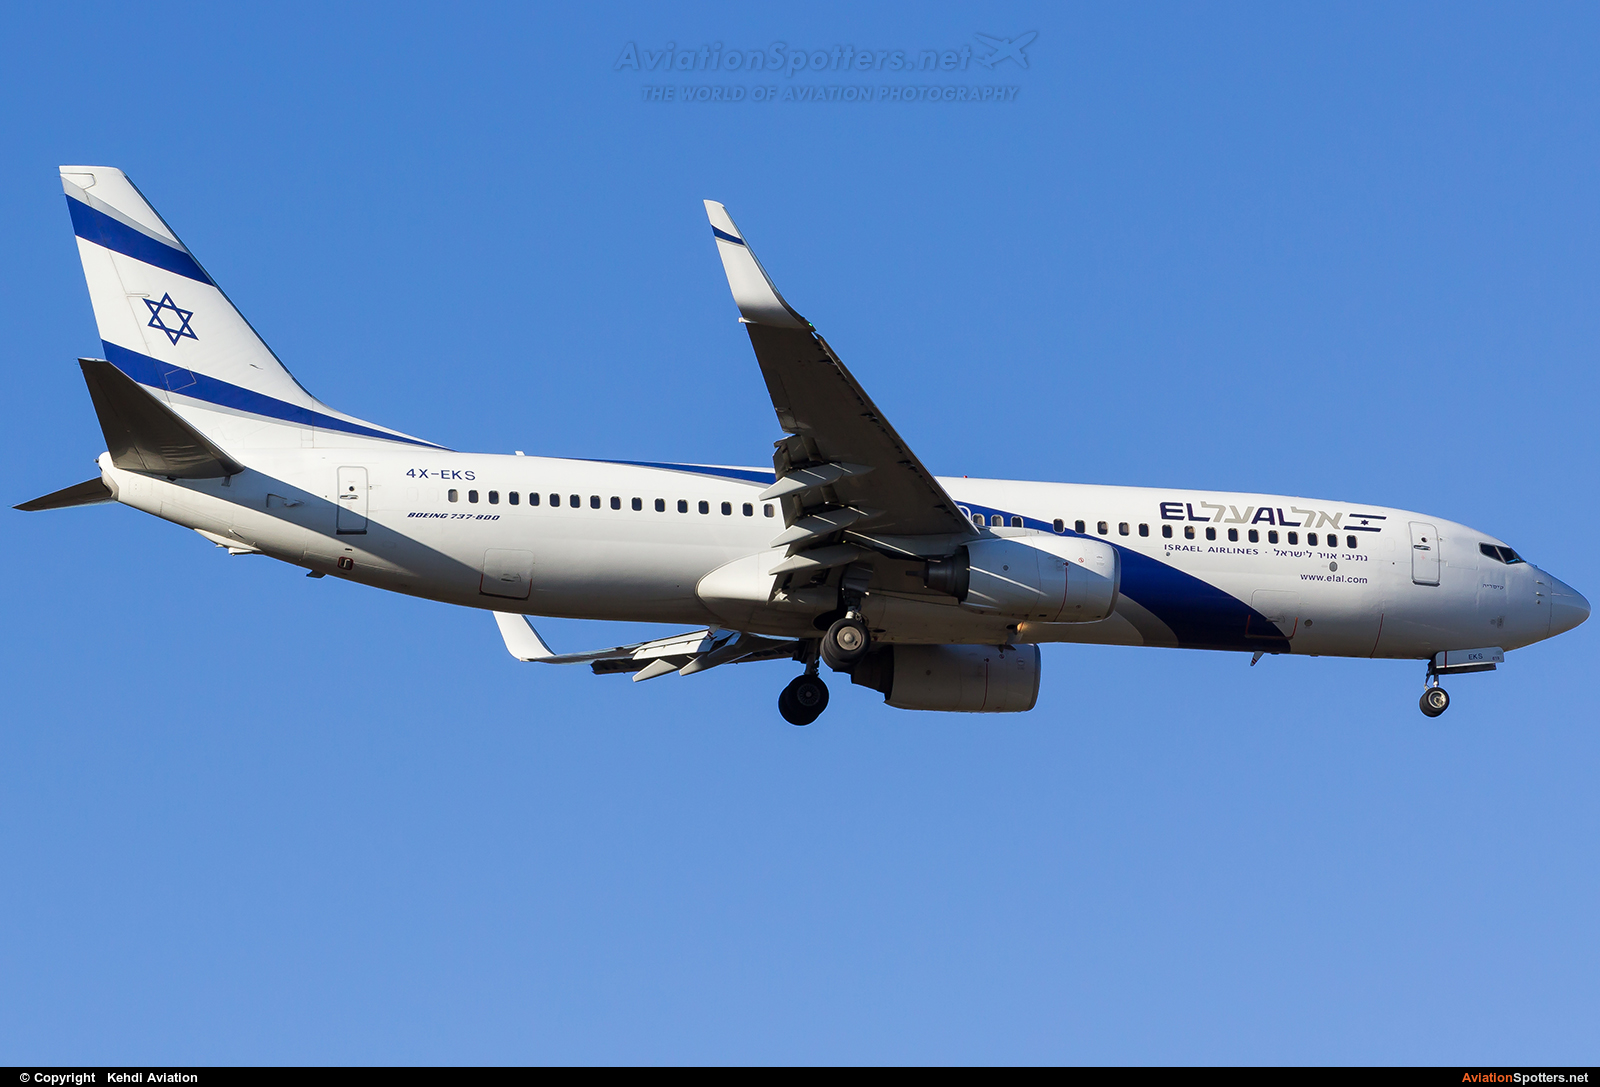 El Al Israel Airlines  -  737-800  (4X-EKS) By Kehdi Aviation (Kehdi Aviation)